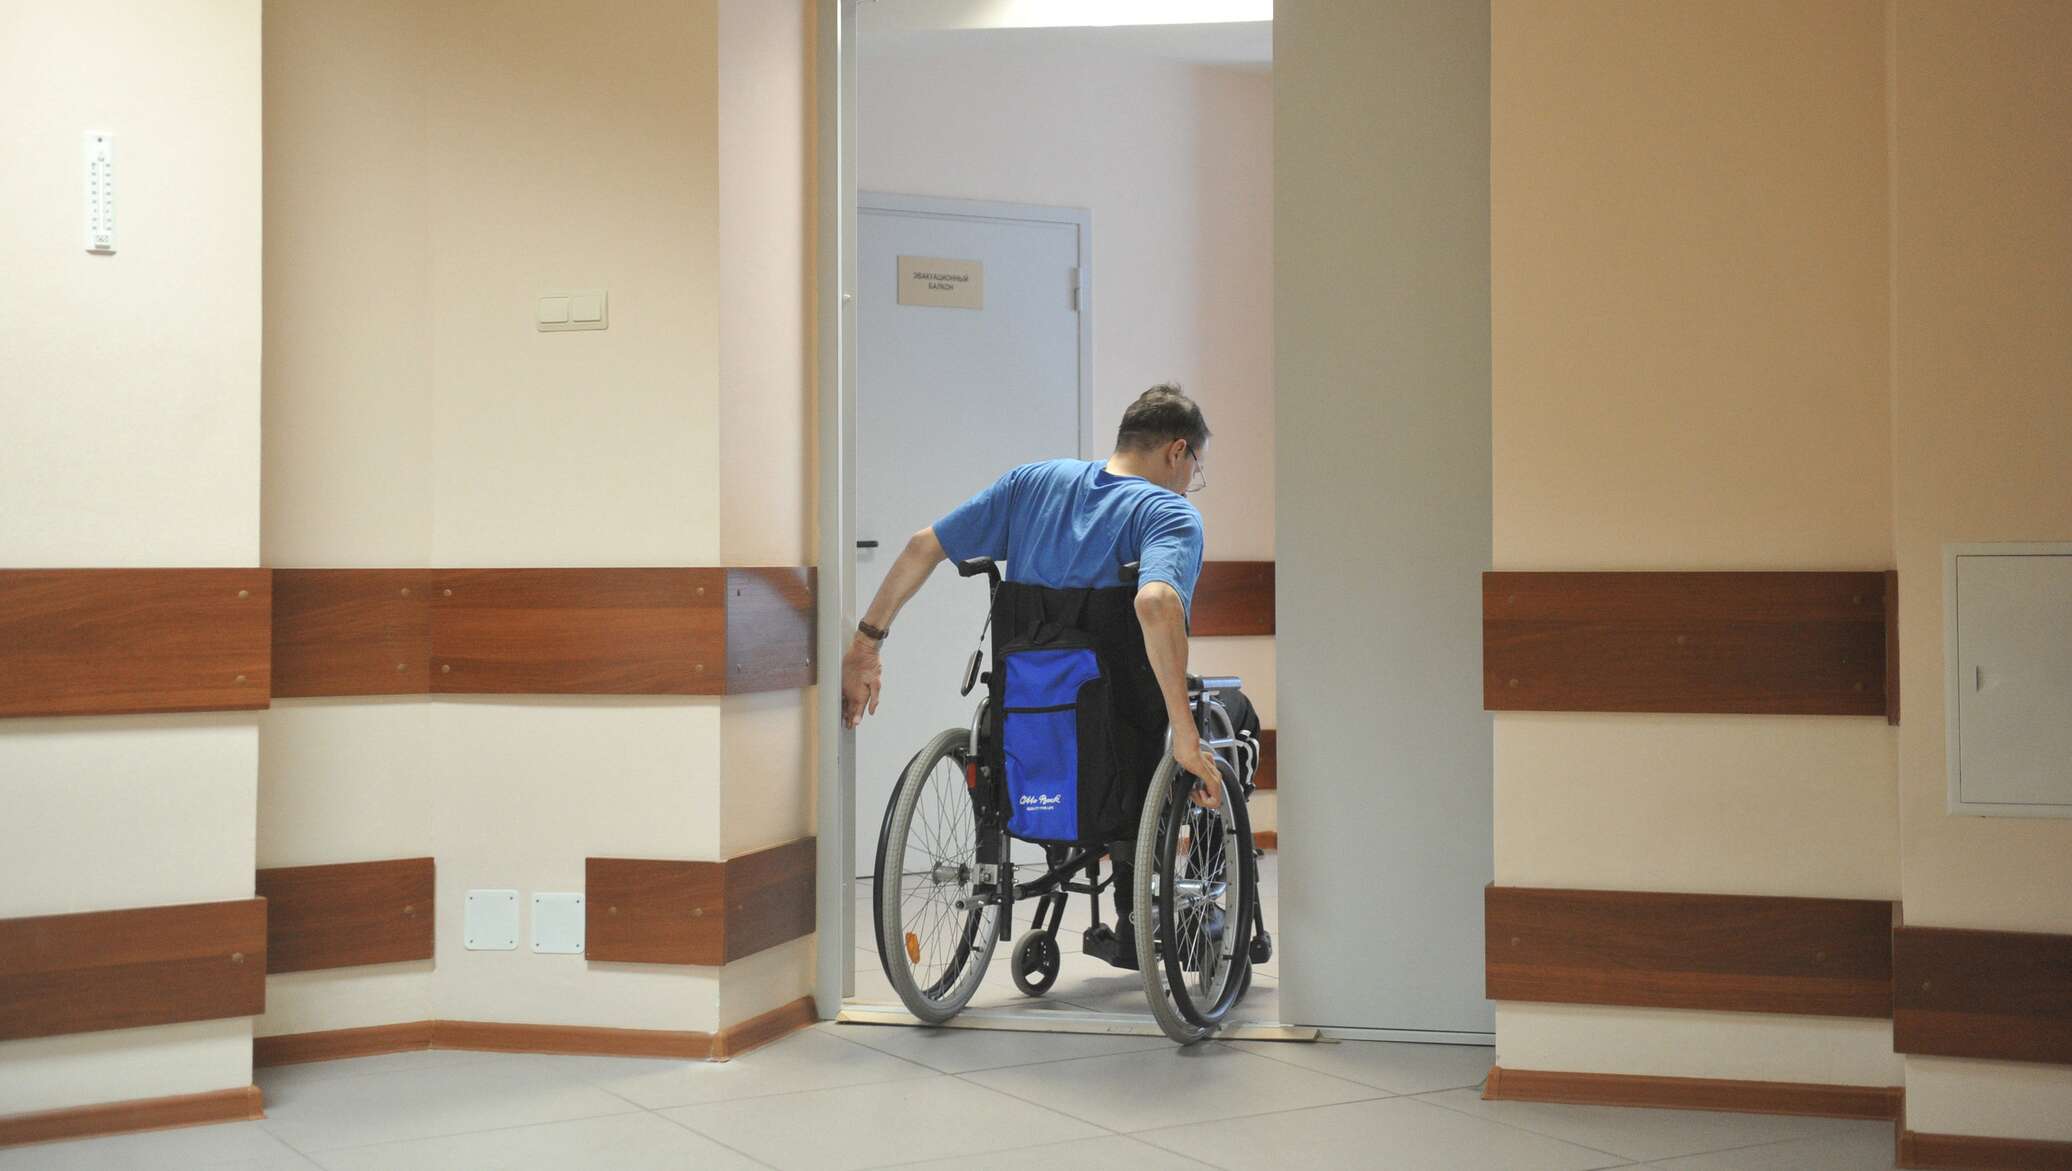 Получение жилья ребенку инвалиду. Двери для инвалидов колясочников. Квартира для инвалида. Жильё для инвалидов колясочников. Проем для инвалидов.